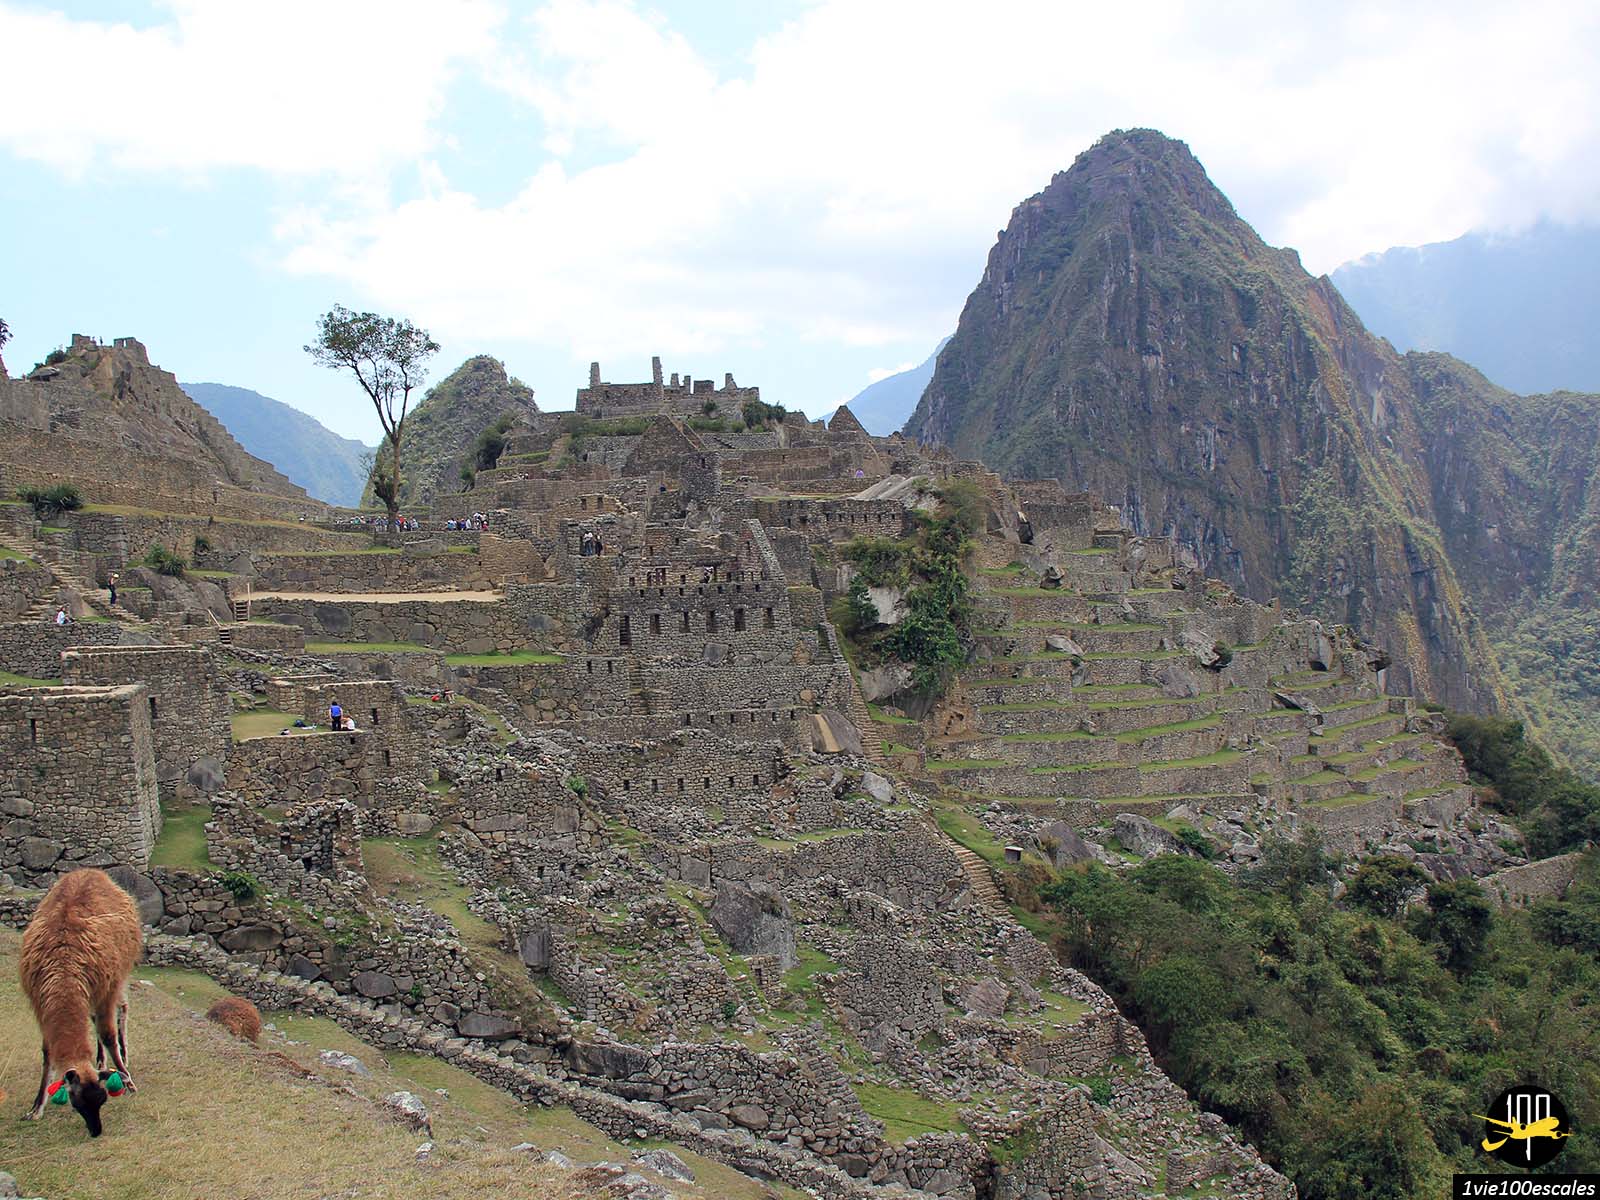 Ancienne cité inca perchée sur un piton rocheux, le Machu Picchu transporte ses visiteurs qu’ils soient locaux ou étrangers